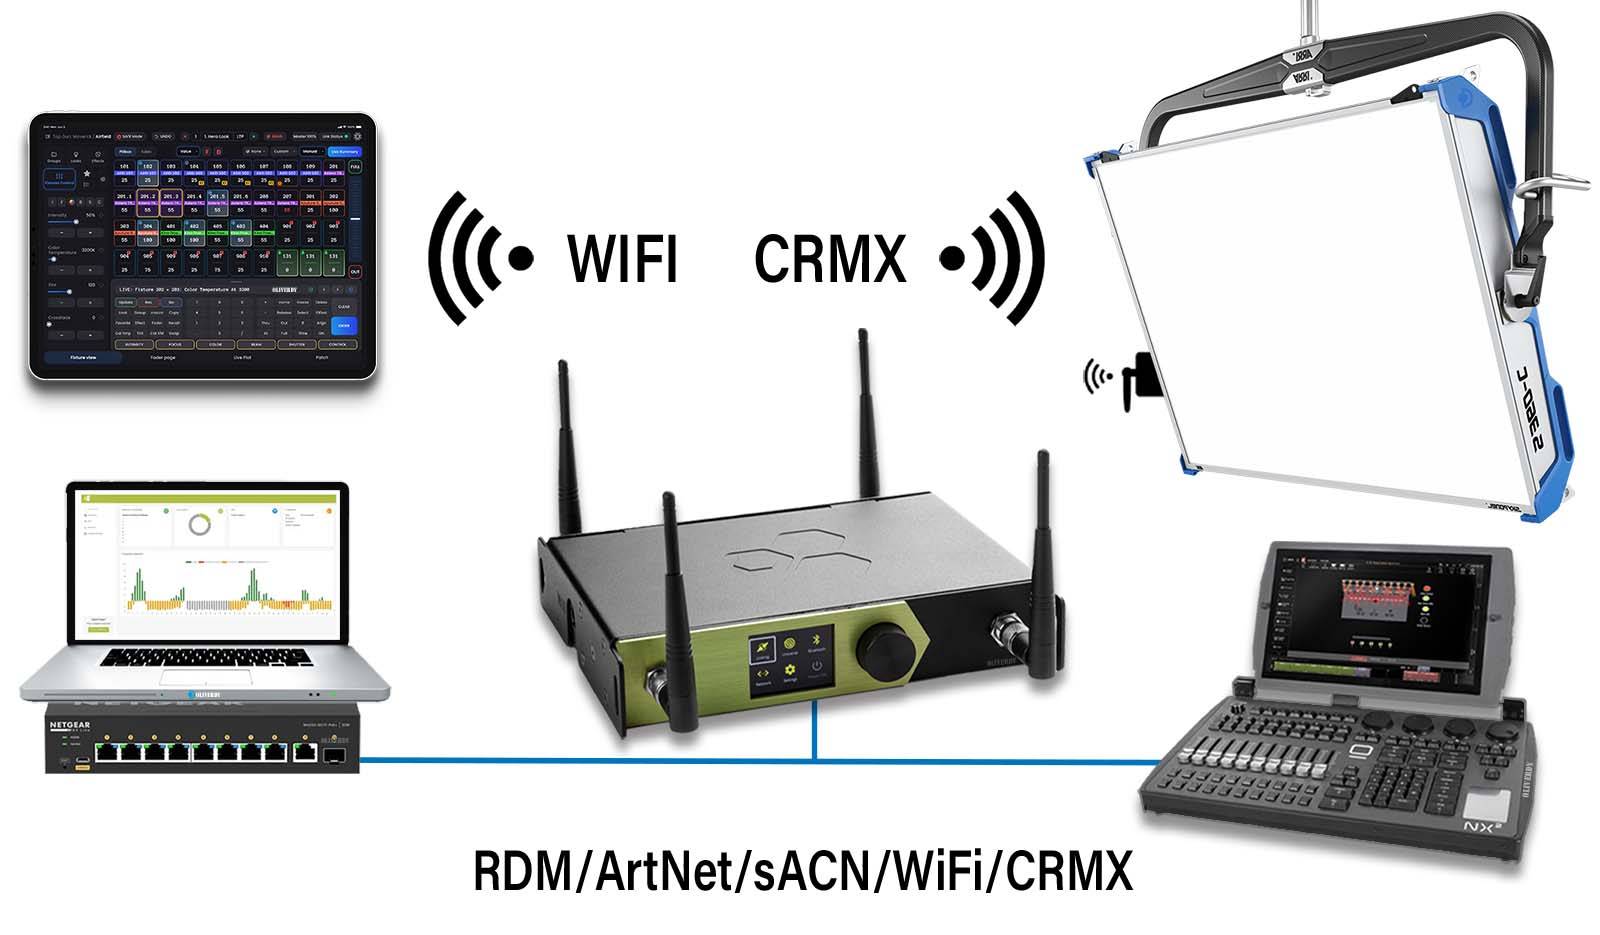 Synoptique réseaux lumiere cinéma RDM/ArtNet/sACN/WiFi/CRMX